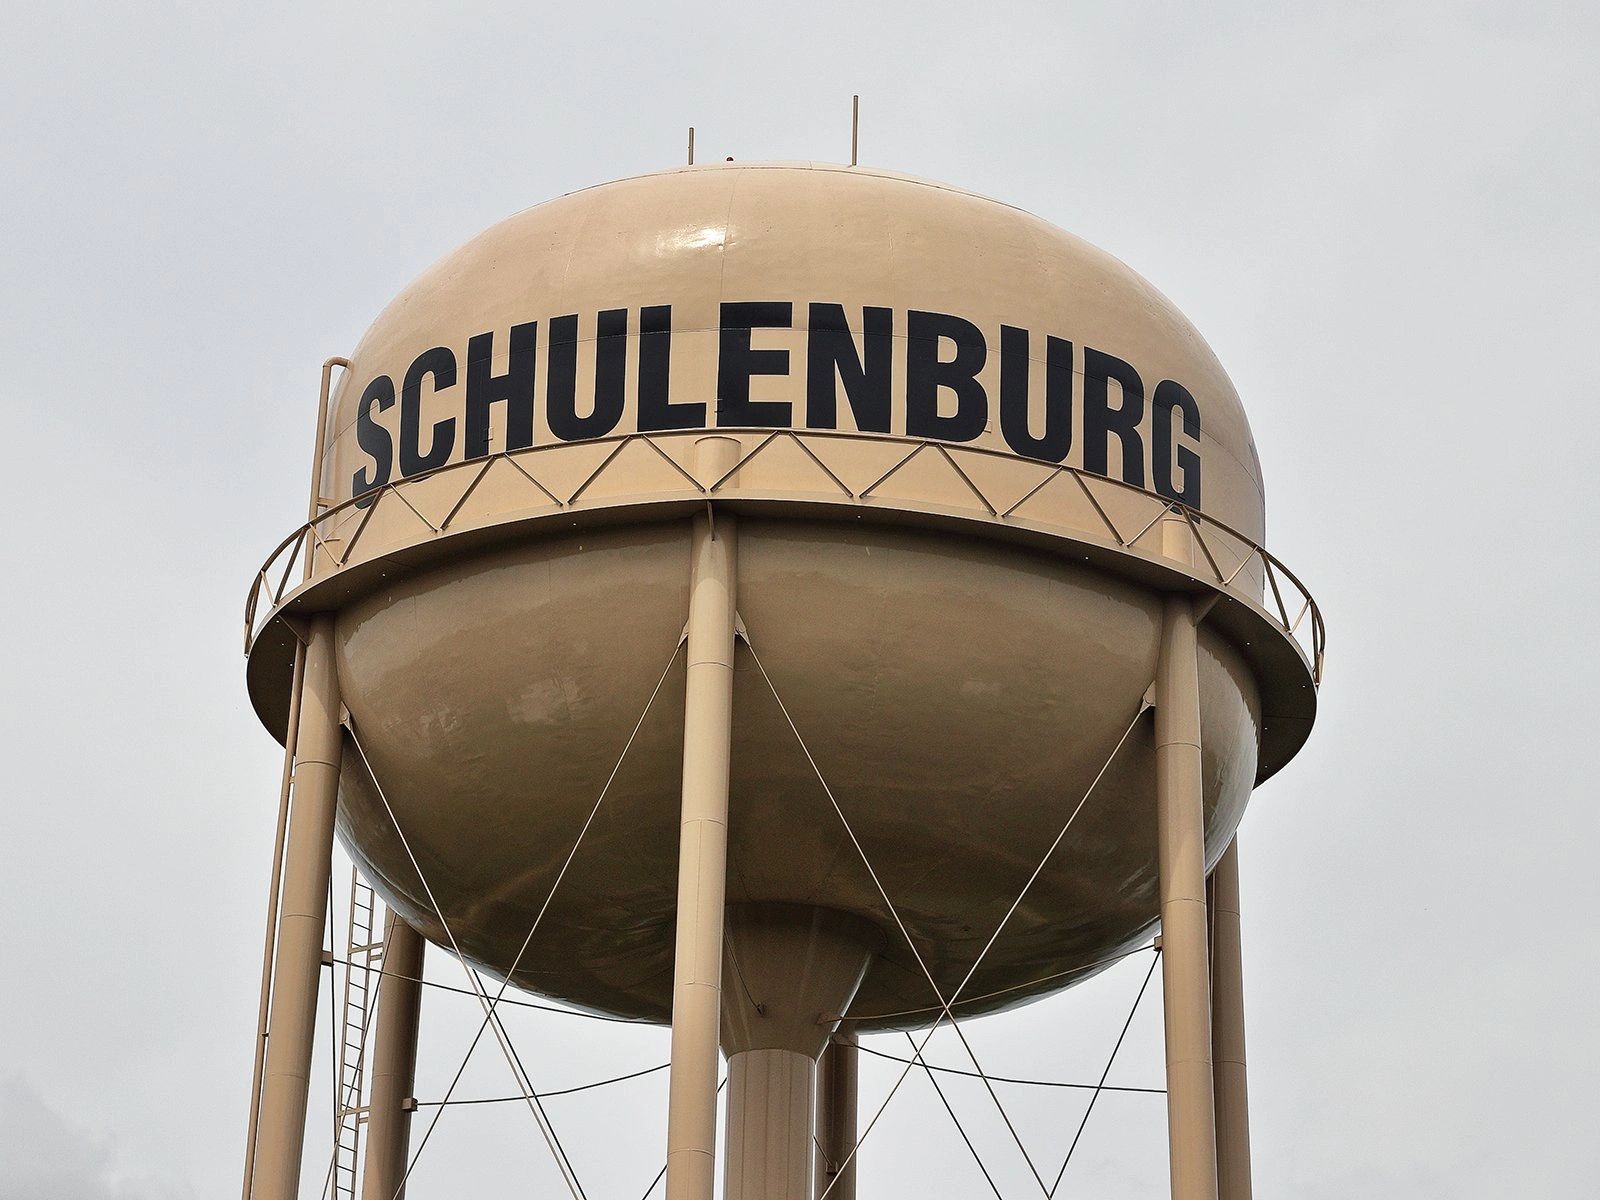 Schulemburg water tower